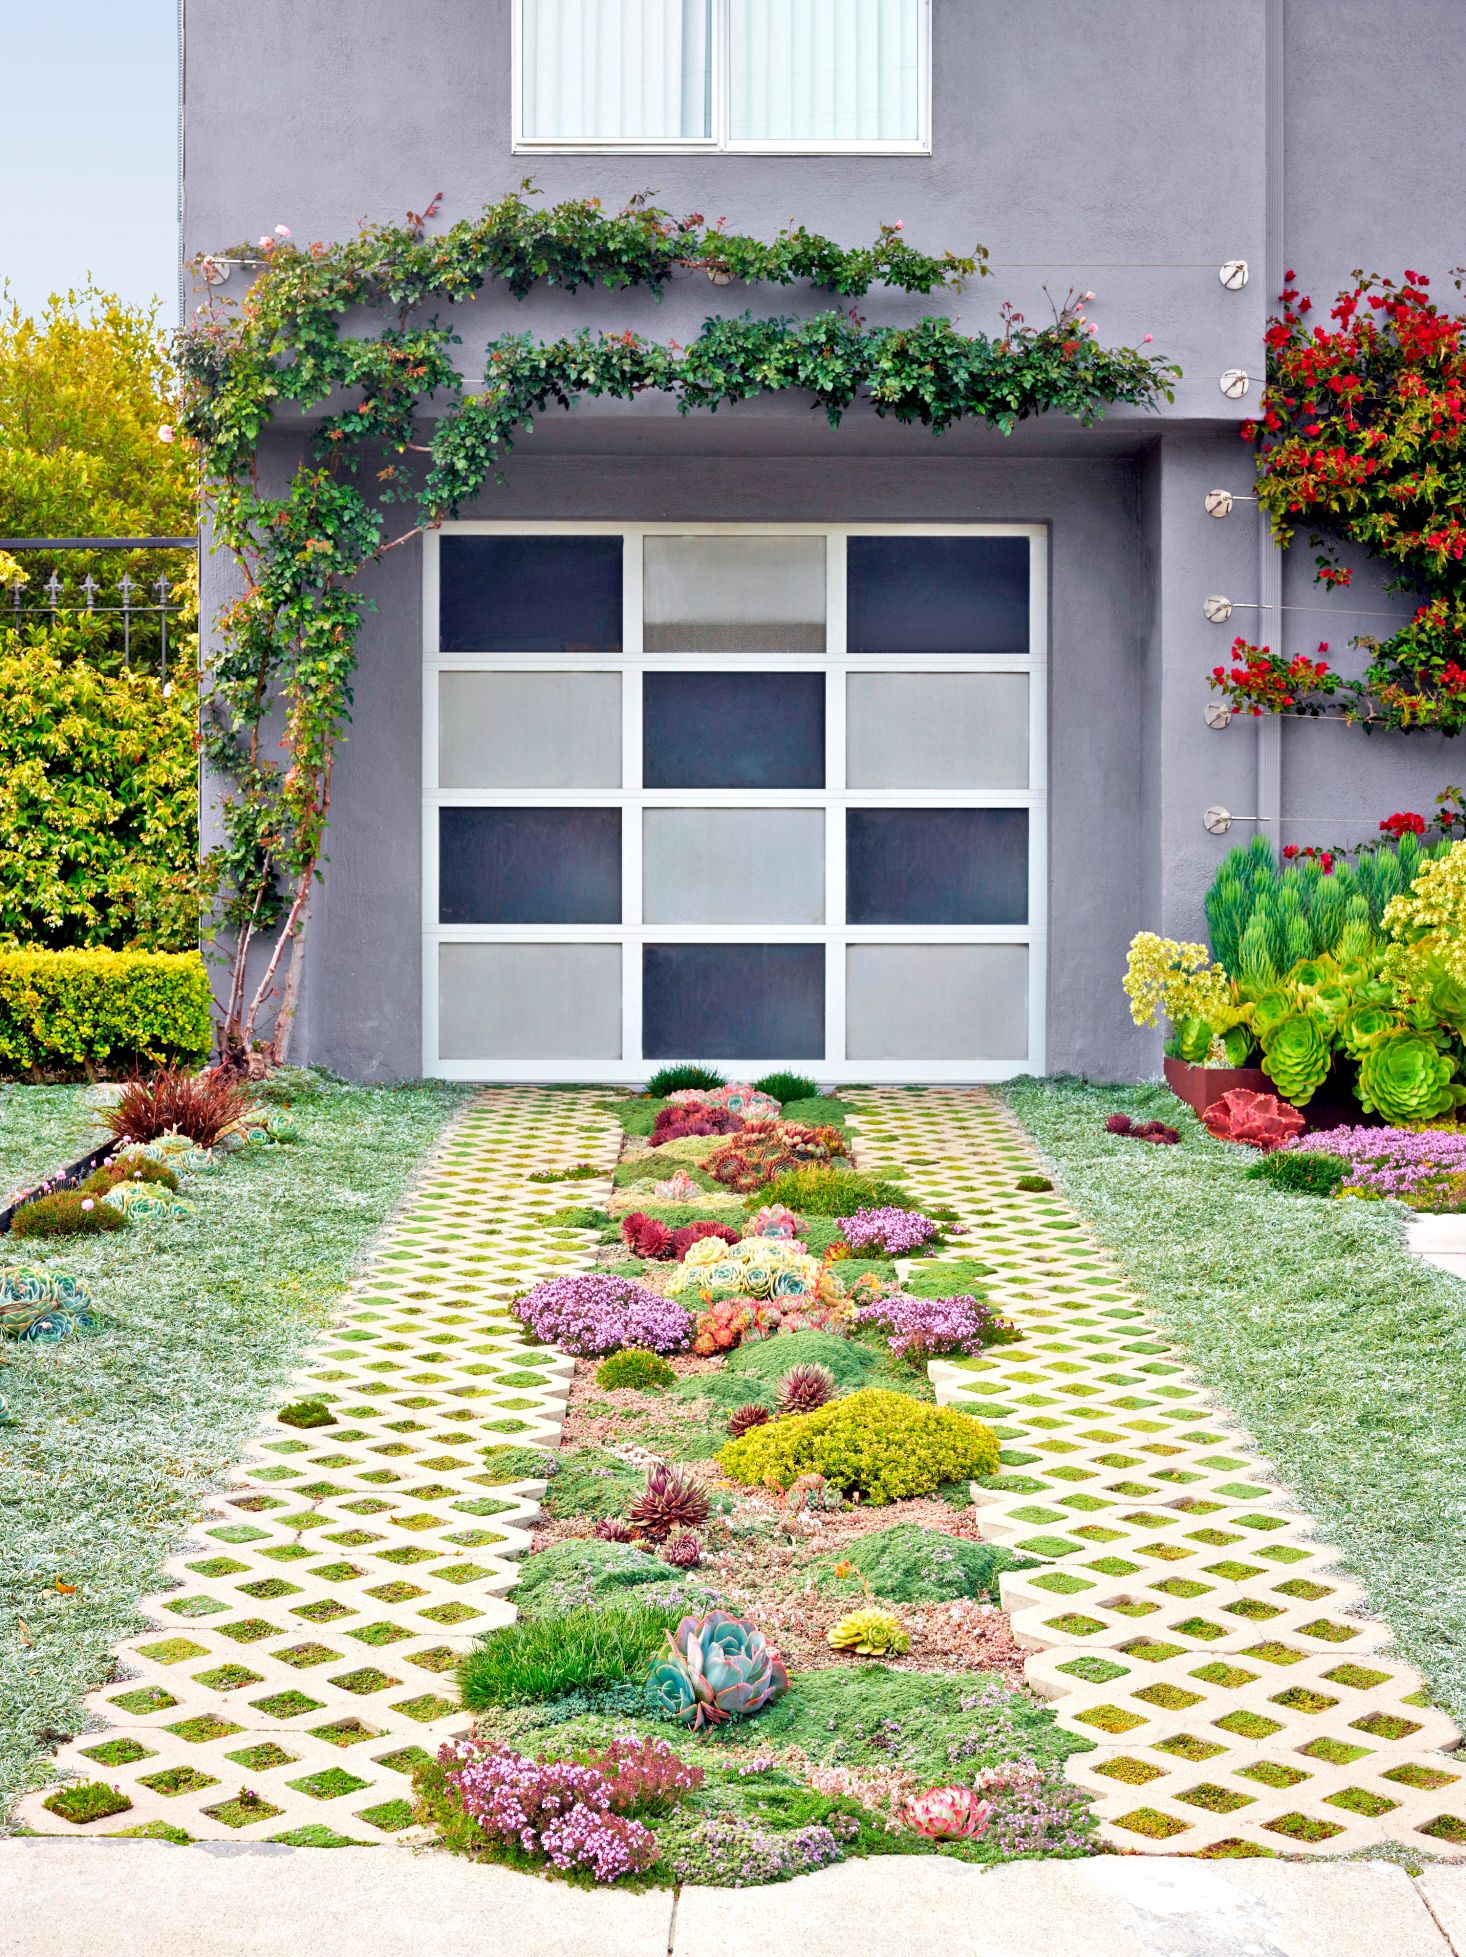 10 Best Home Garden Ideas To Enhance The Beauty of Home Garden